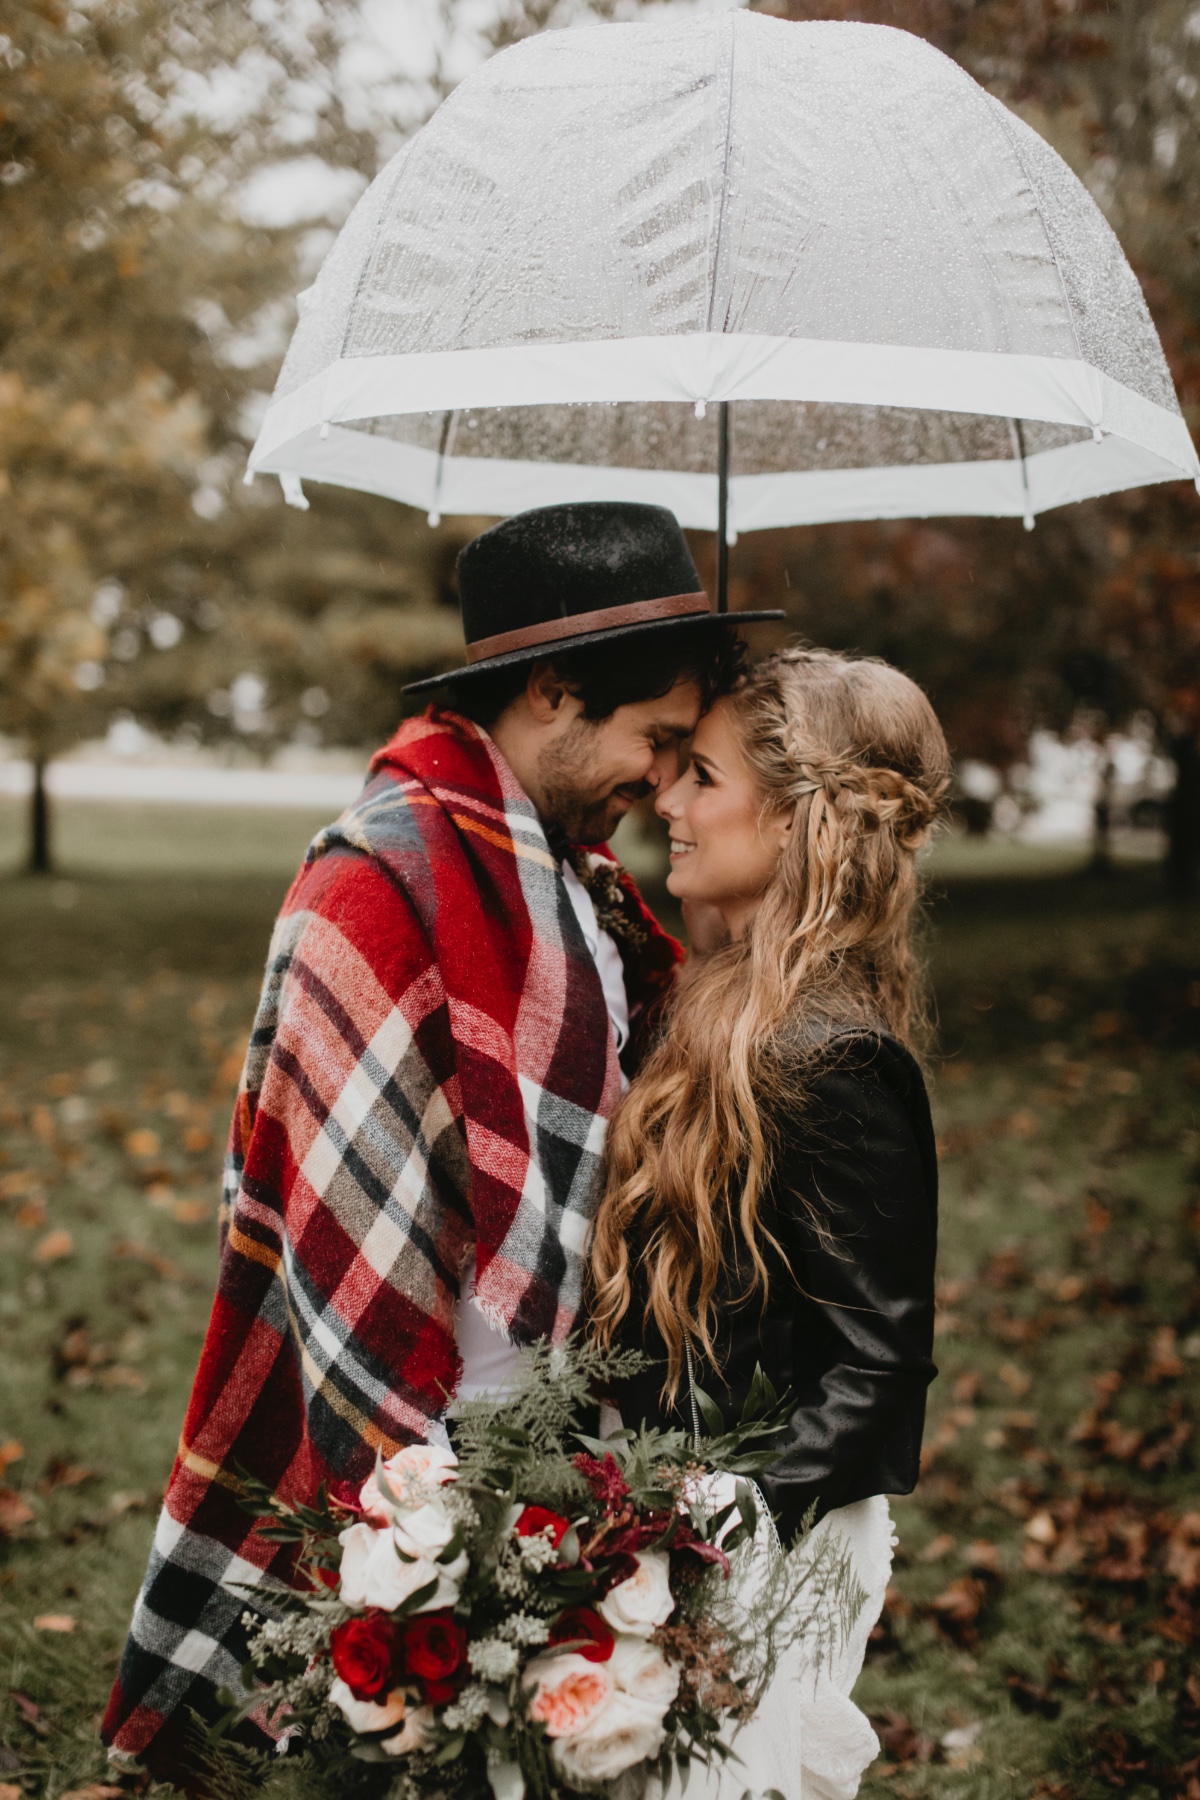 autumn wedding shoot in the rain